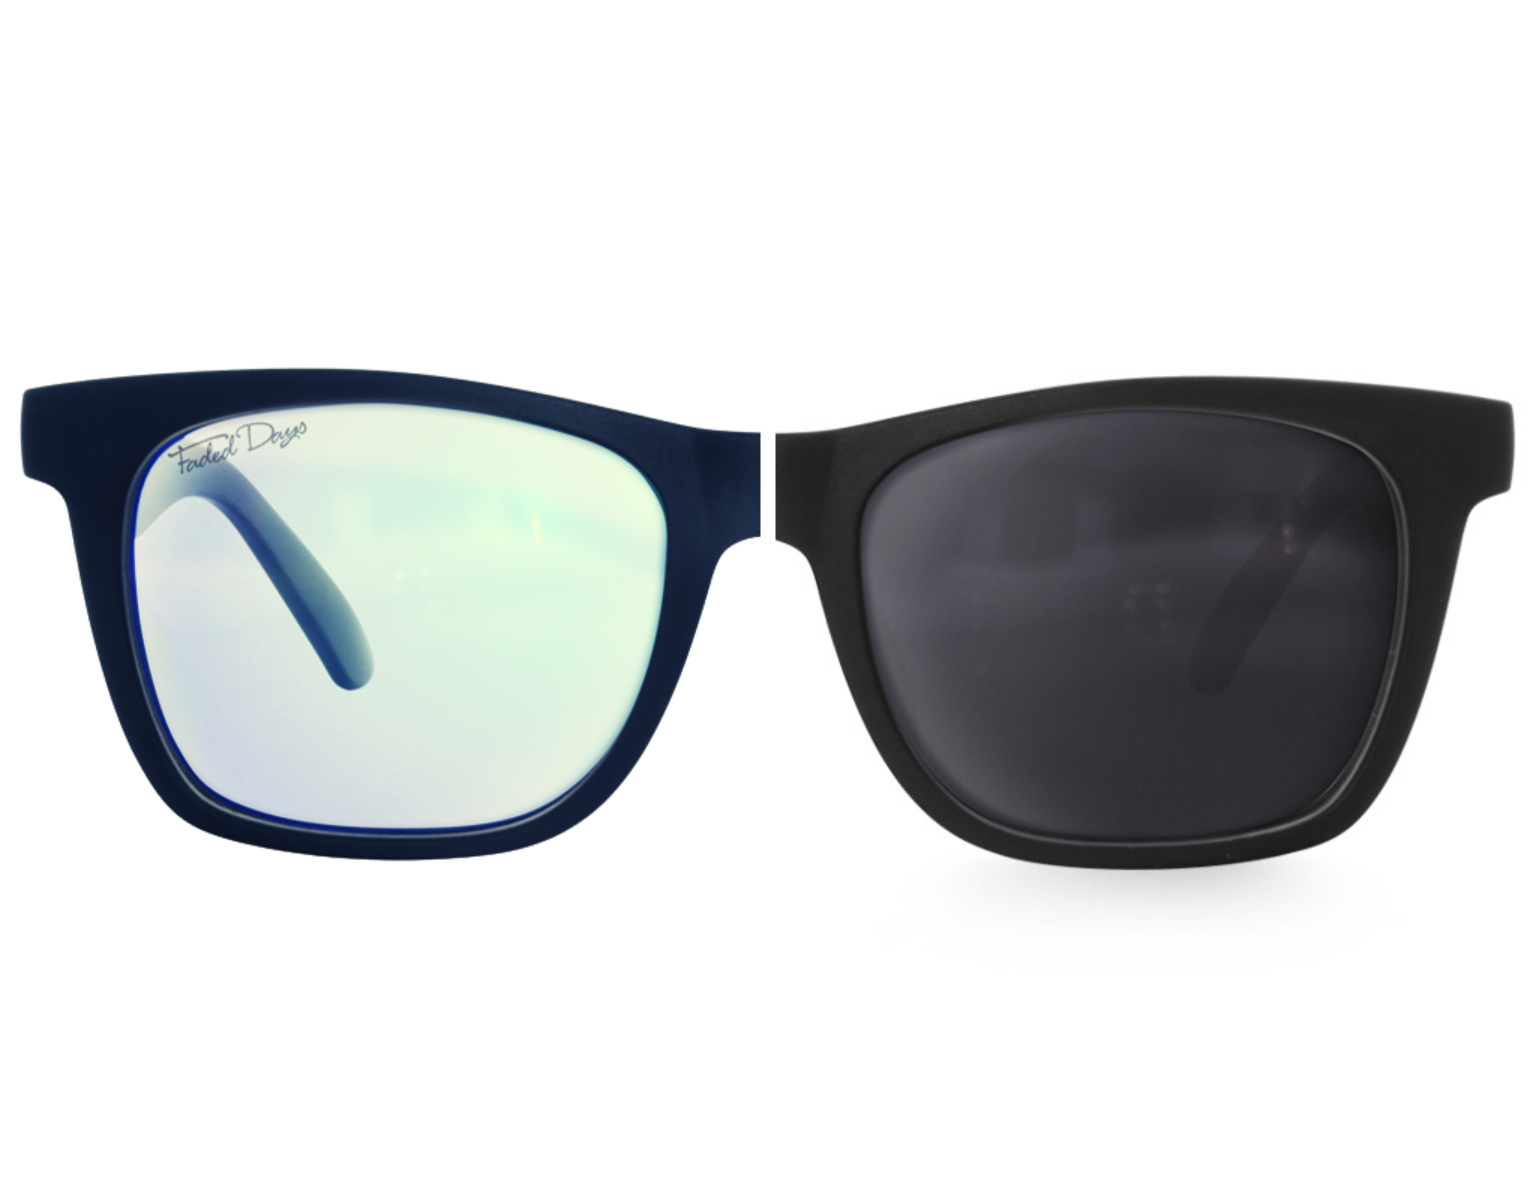 XXL Prescription Glasses/Sunglasses for Big Heads, 165mm – Faded